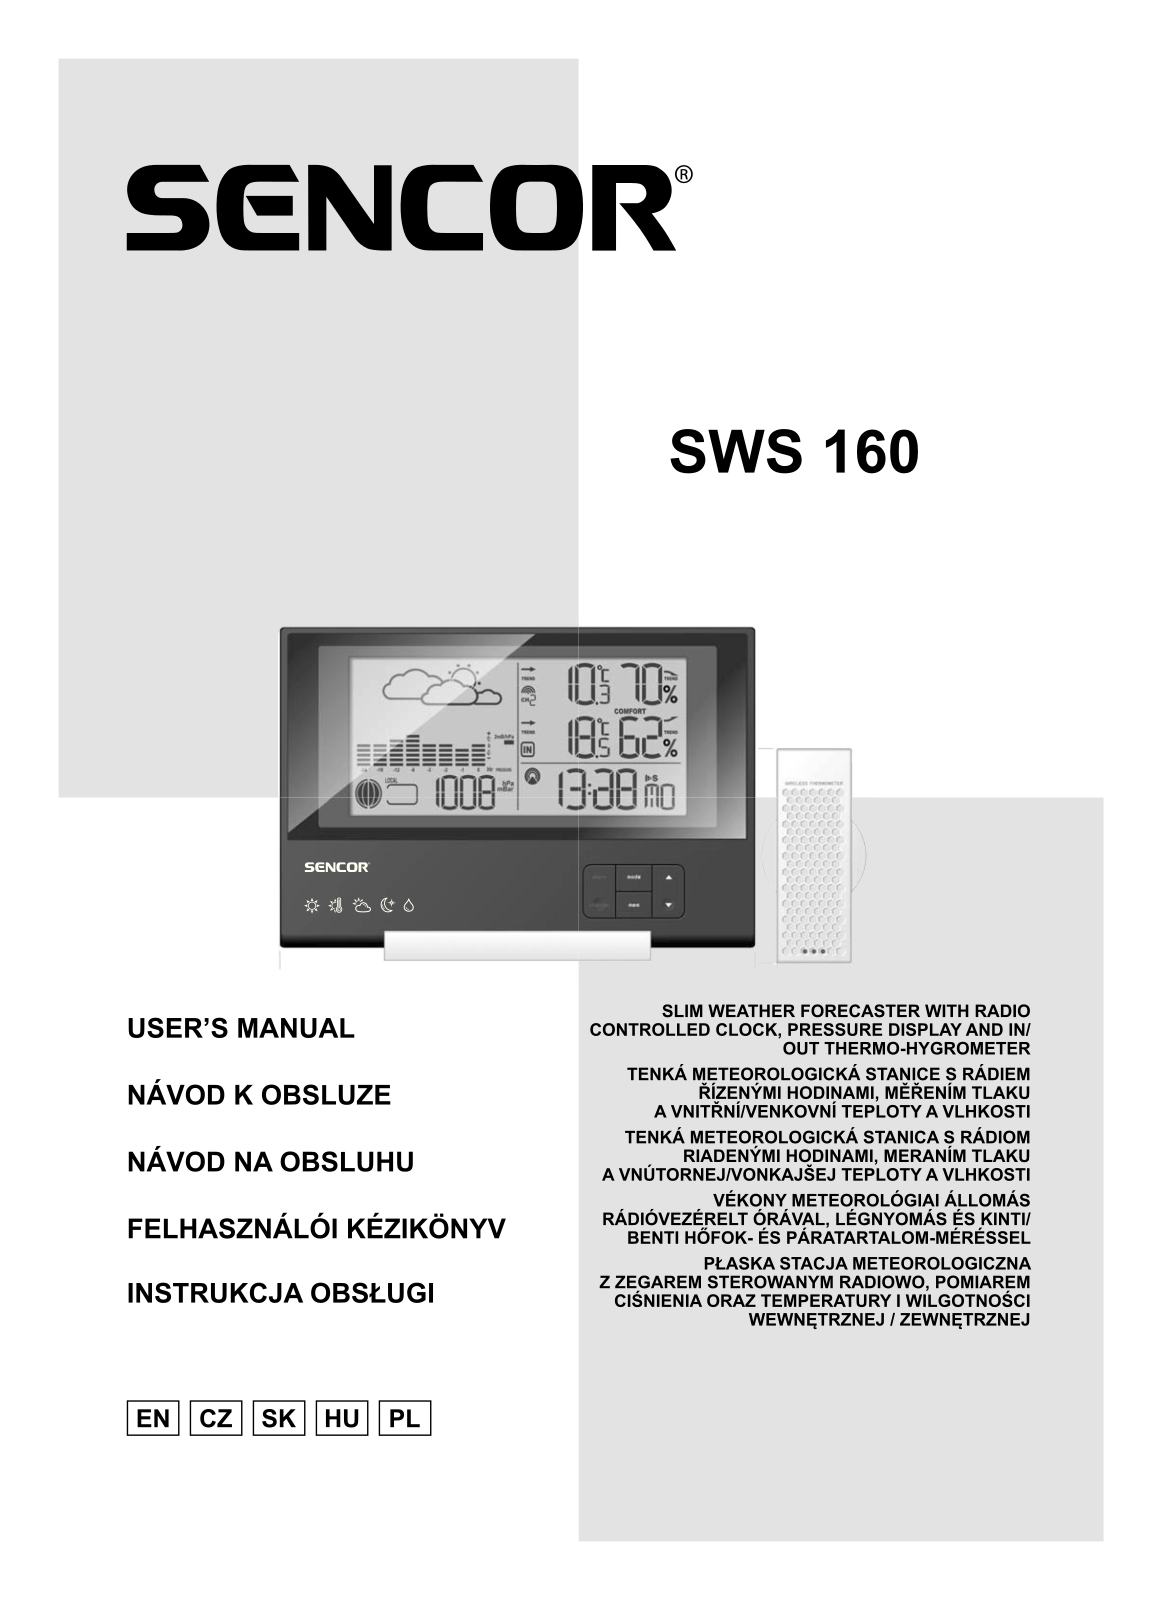 Sencor SWS 160 User Manual